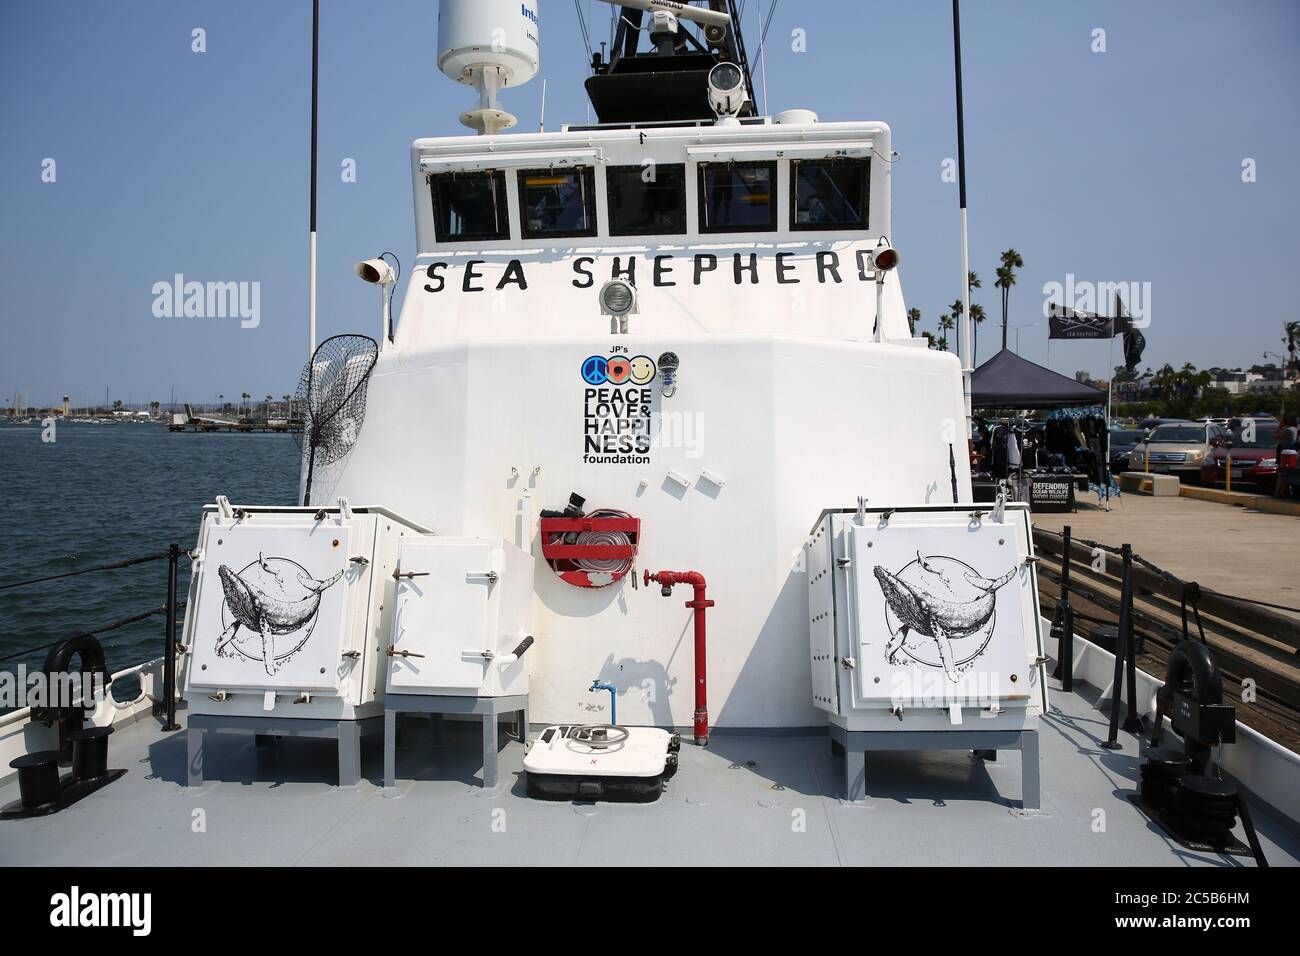 San Diego, Navy Pier, Californie, ÉTATS-UNIS - navire Farley Mowat de la Sea Shepherd conservation Society, contre la chasse à la baleine Banque D'Images